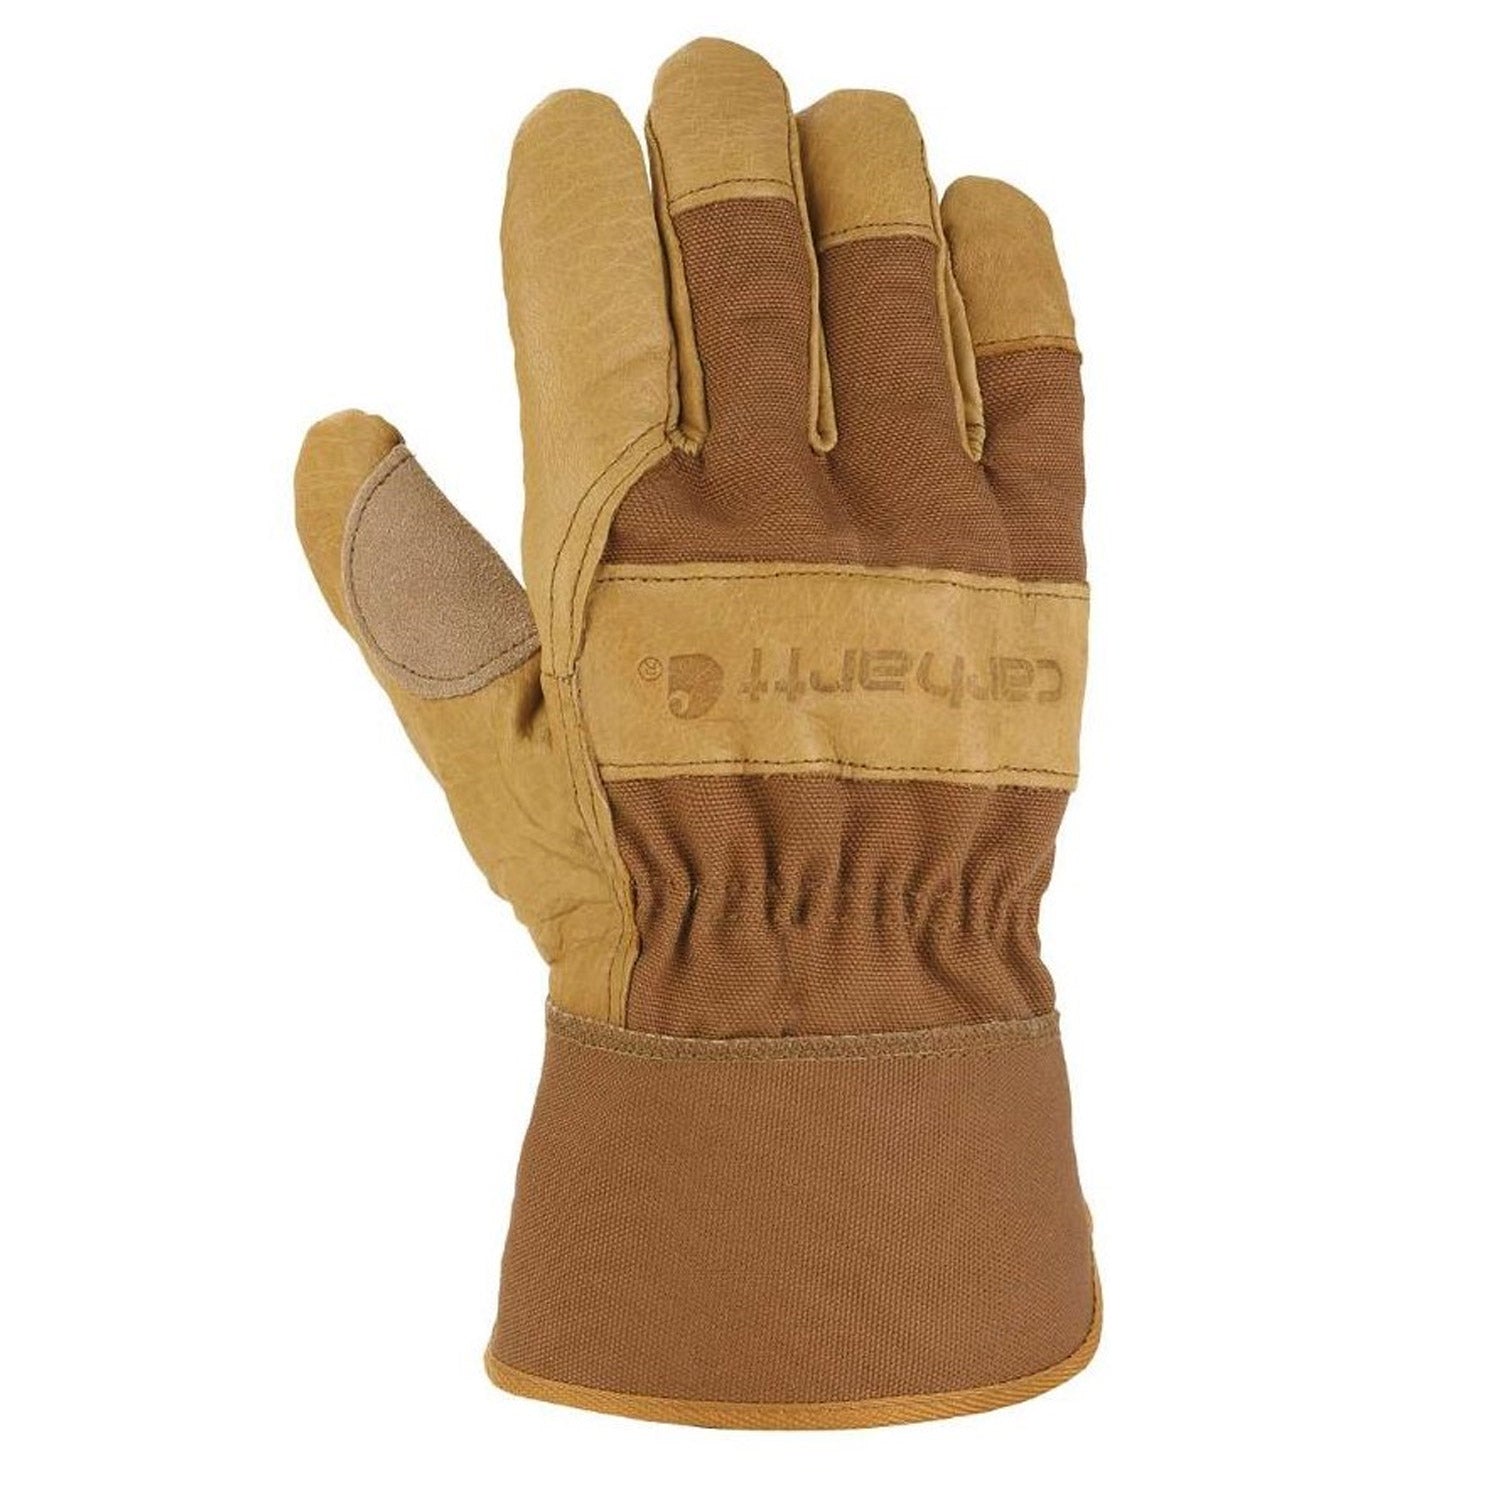 Carhartt Men's Grain Leather Glove - Work World - Workwear, Work Boots, Safety Gear